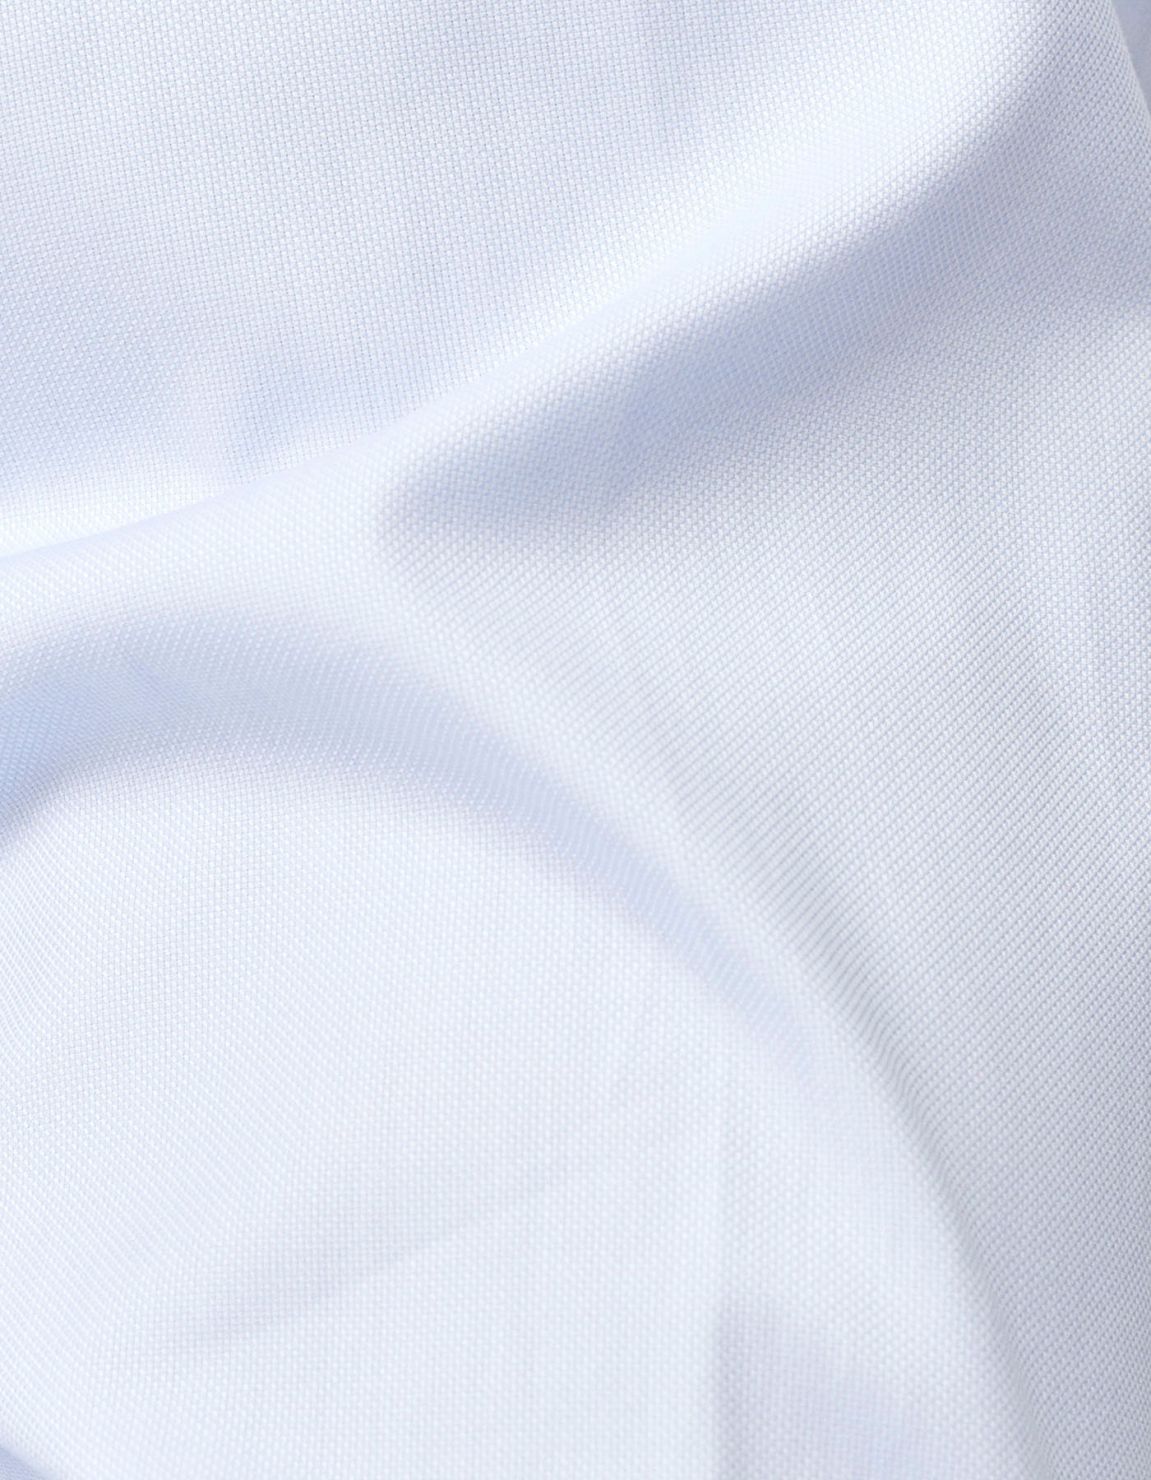 Camisa Cuello francés Celeste claro Oxford Liso Slim Fit 2